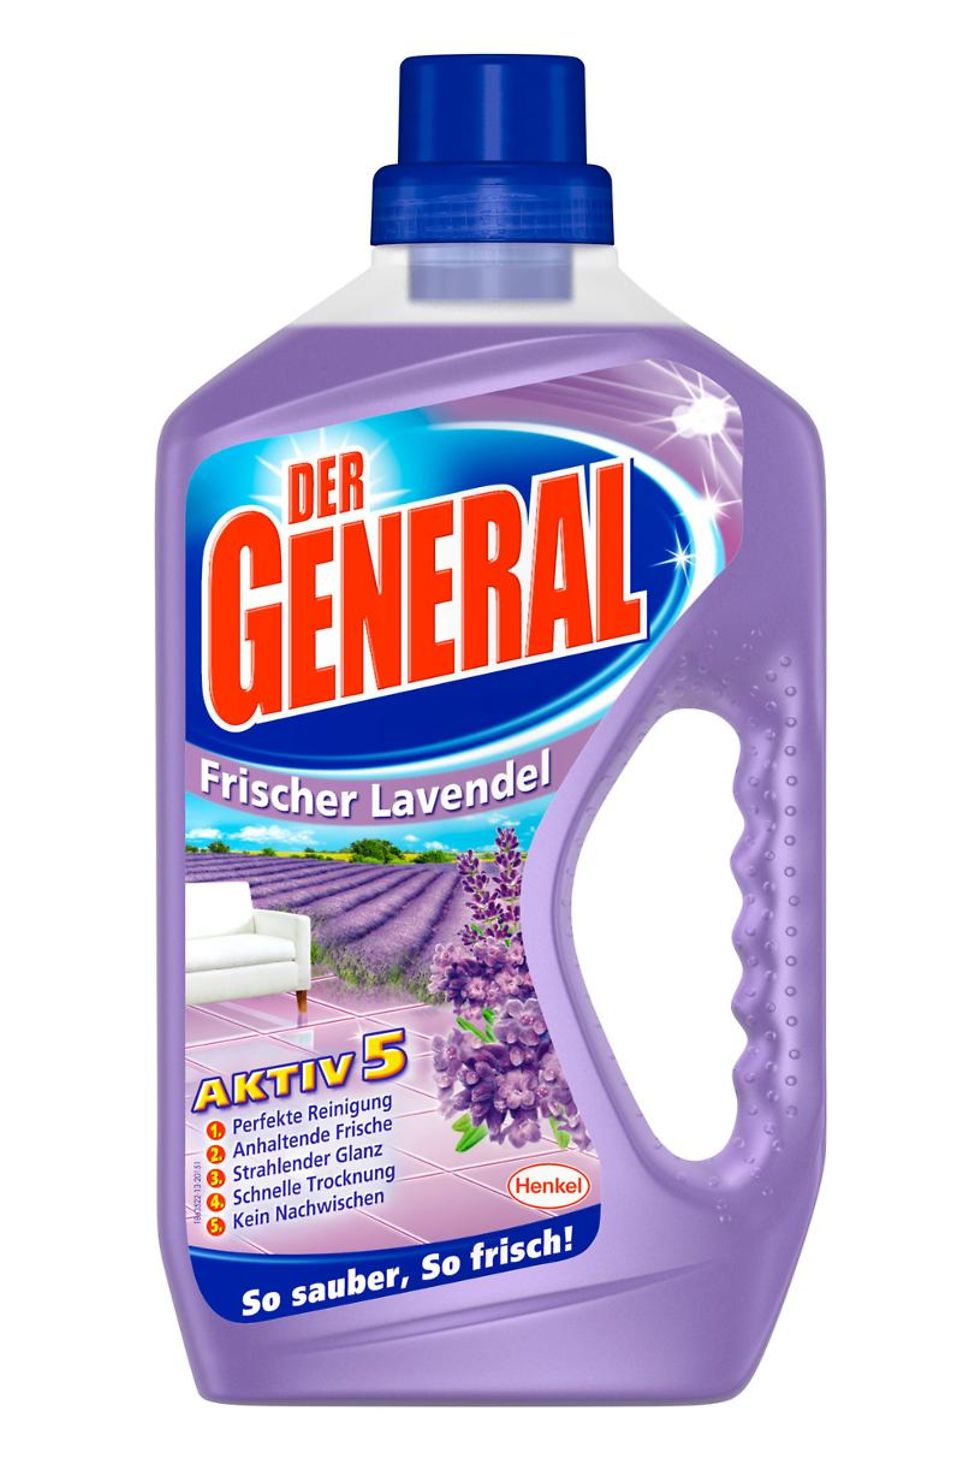 Der General Aktiv 5 „Frischer Lavendel“